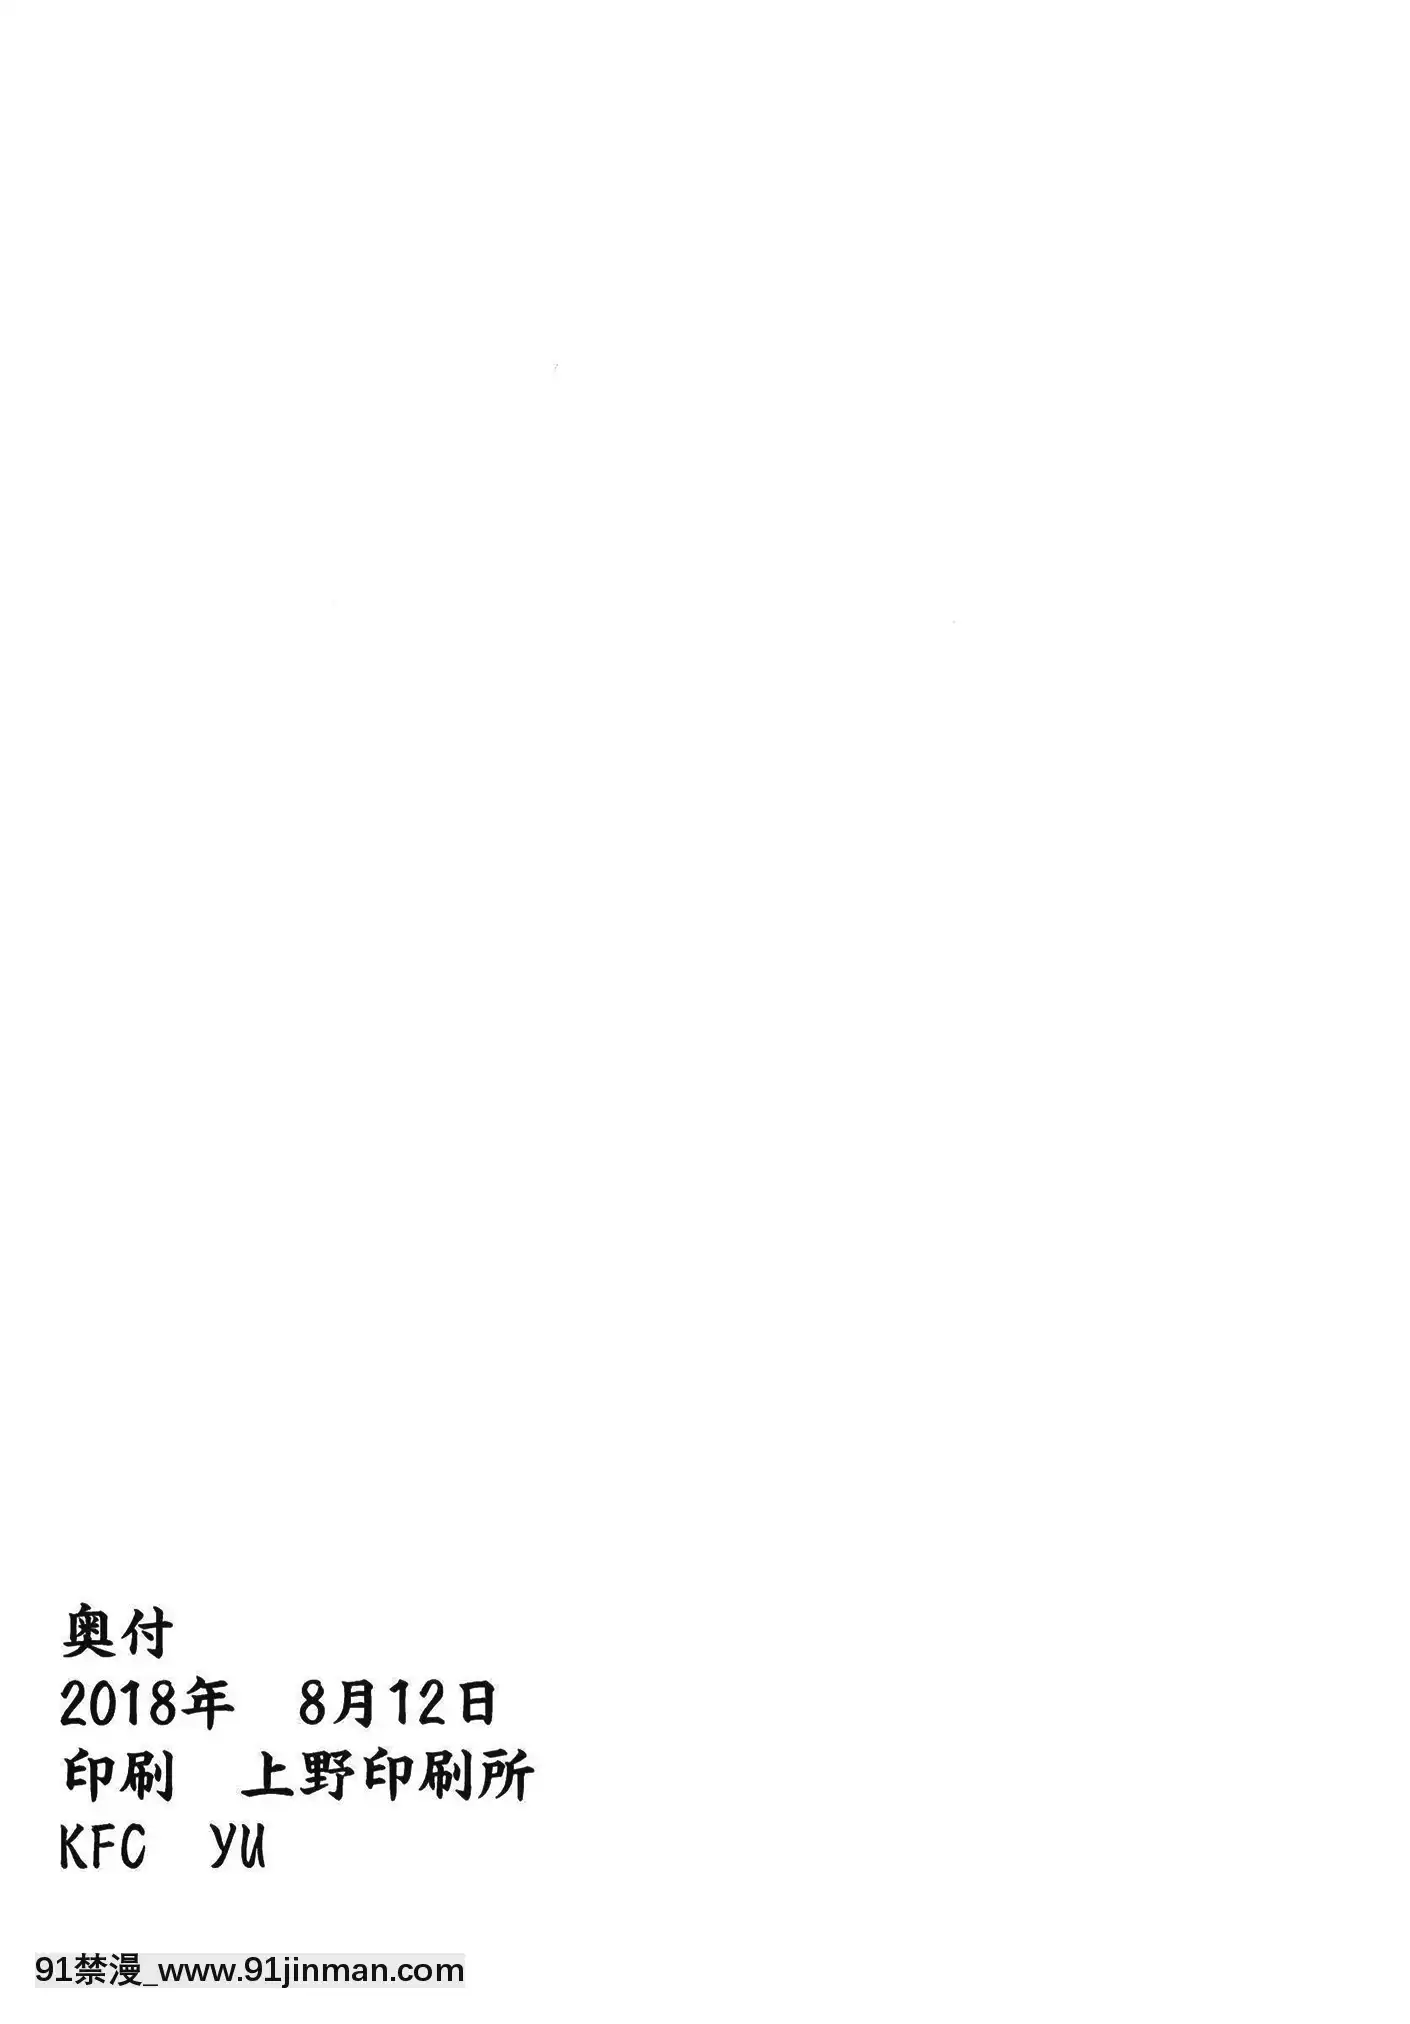 [KFC (YU)] Darby Staniang (Mã Niang's big head post) [Dịch Trung Quốc] [DL version]【anime kurumi tokisaki hentai】